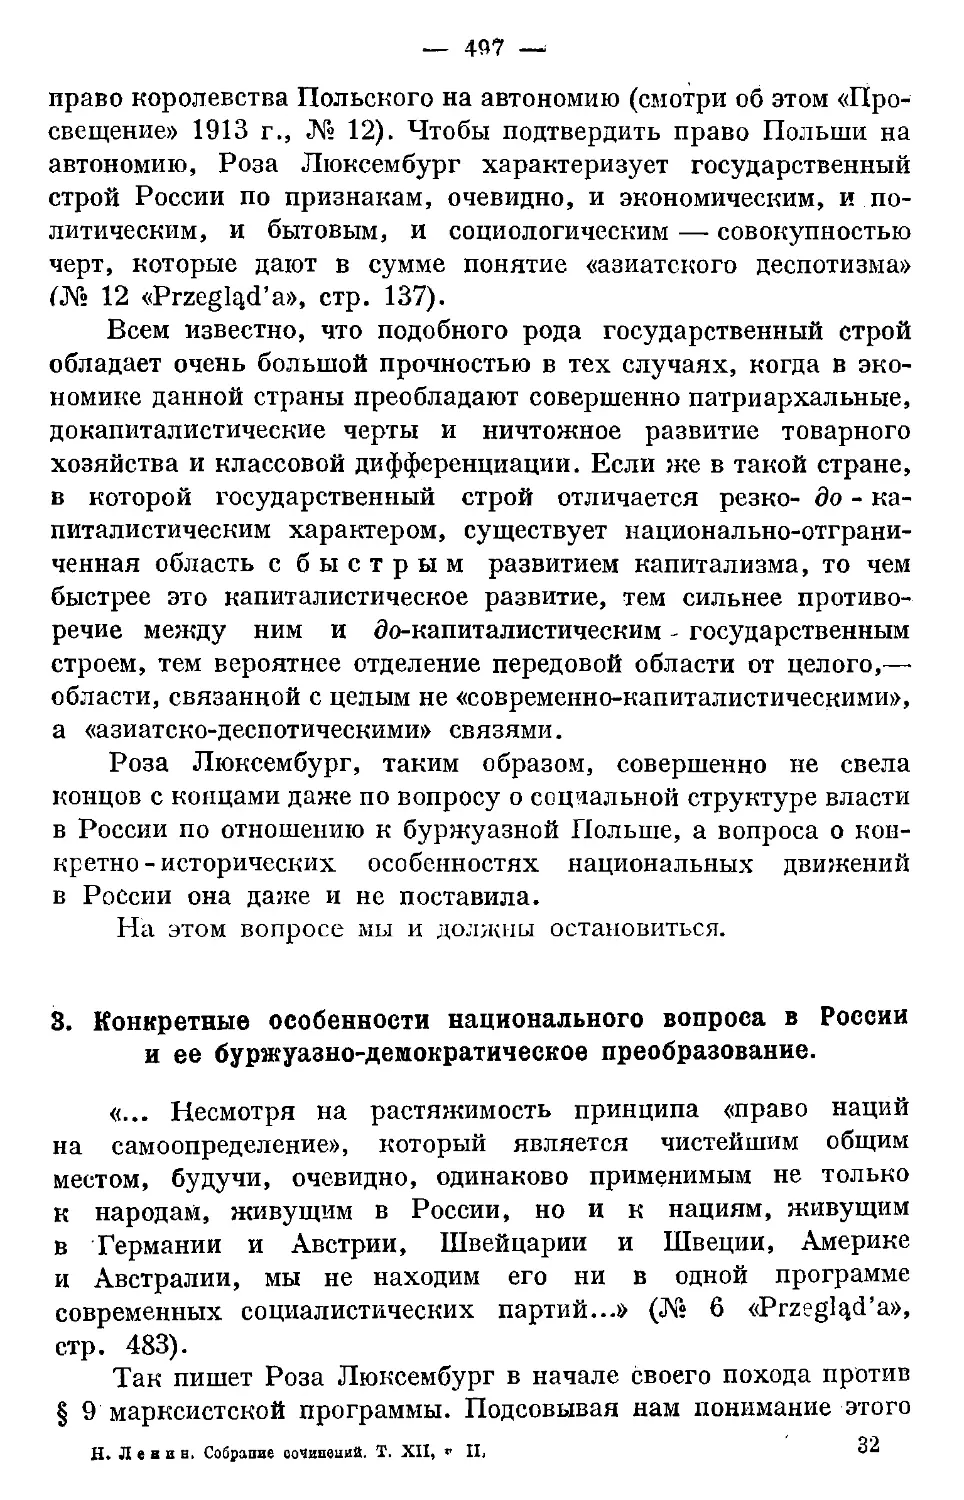 3. Конкретные особенности национального вопроса в России и ее буржуазно-демократическое преобразование